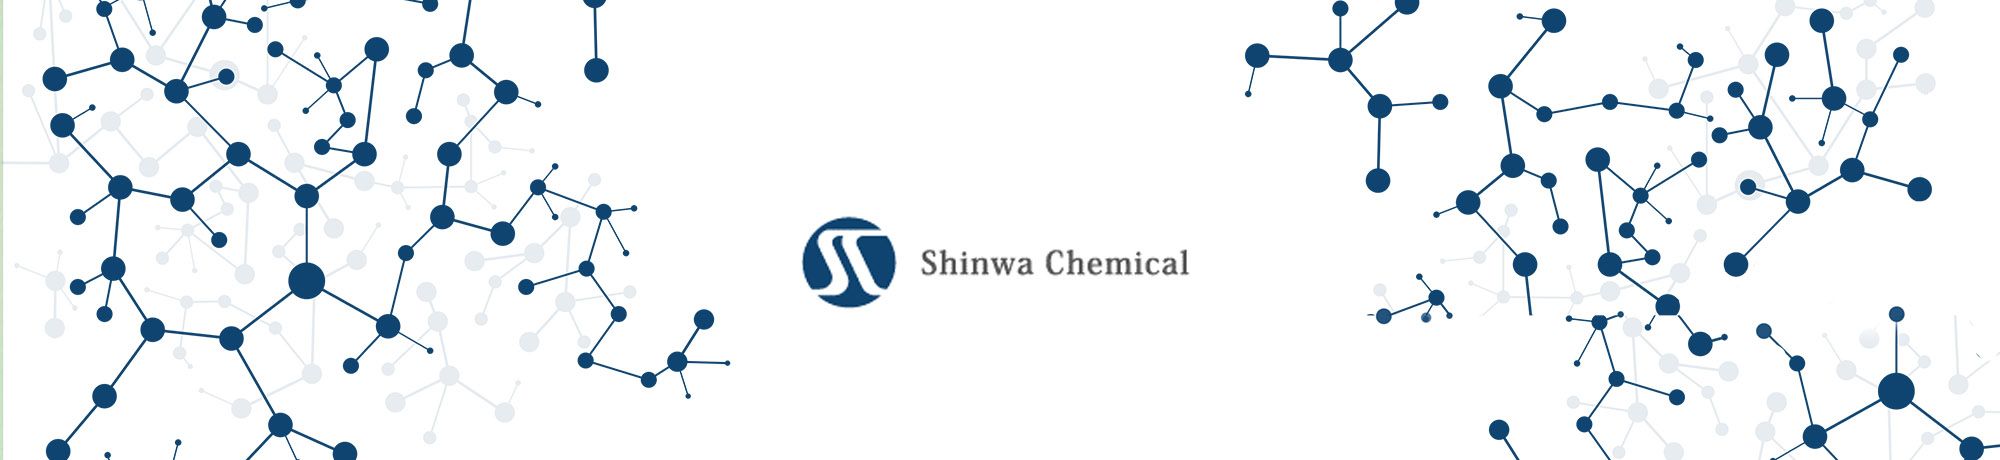 Shinwa Chemical